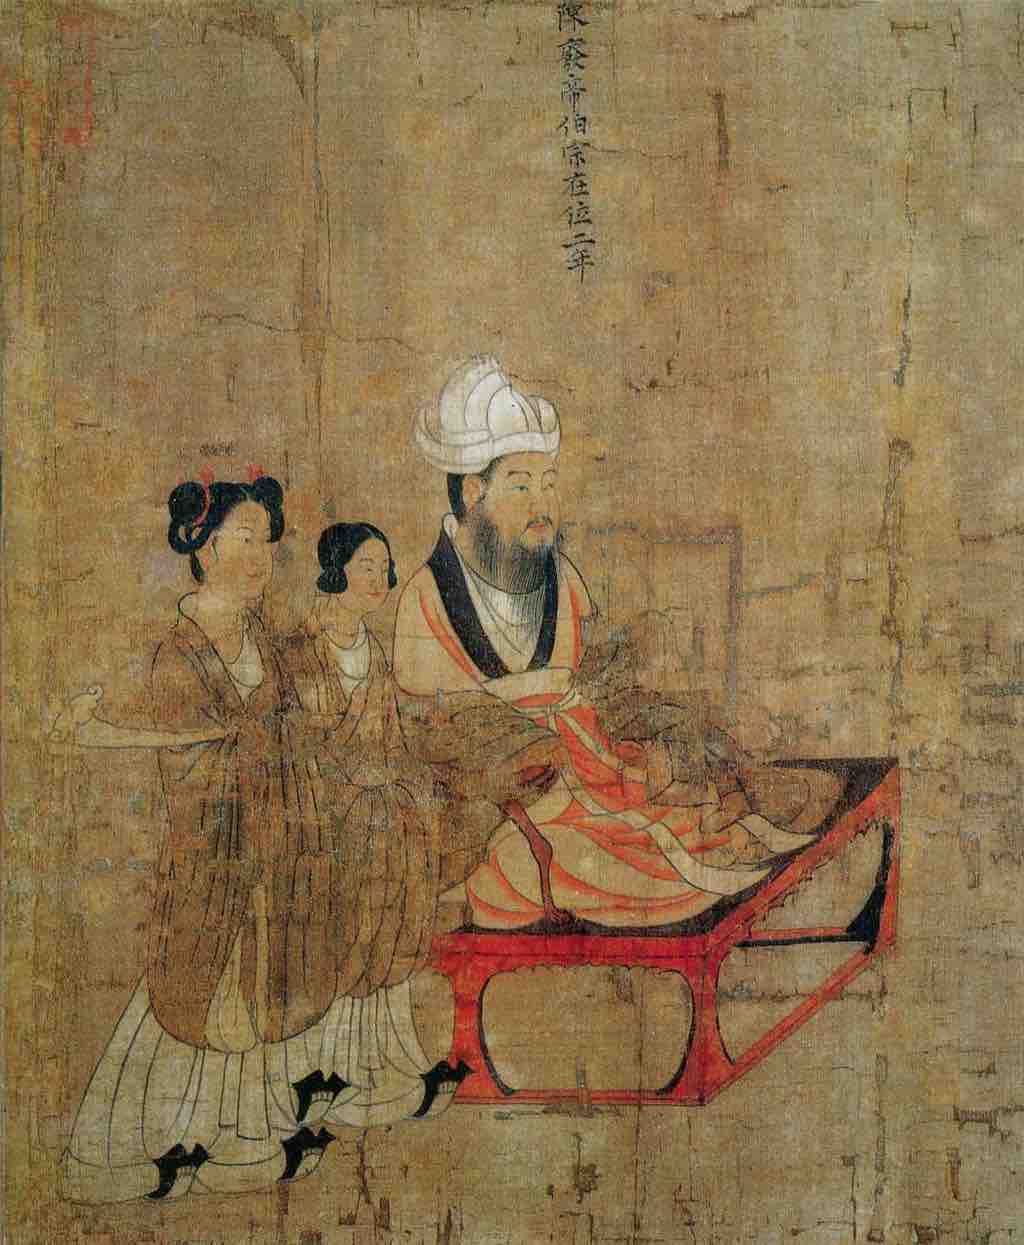 Yan Liben, Thirteen Emperors Scroll (detail)